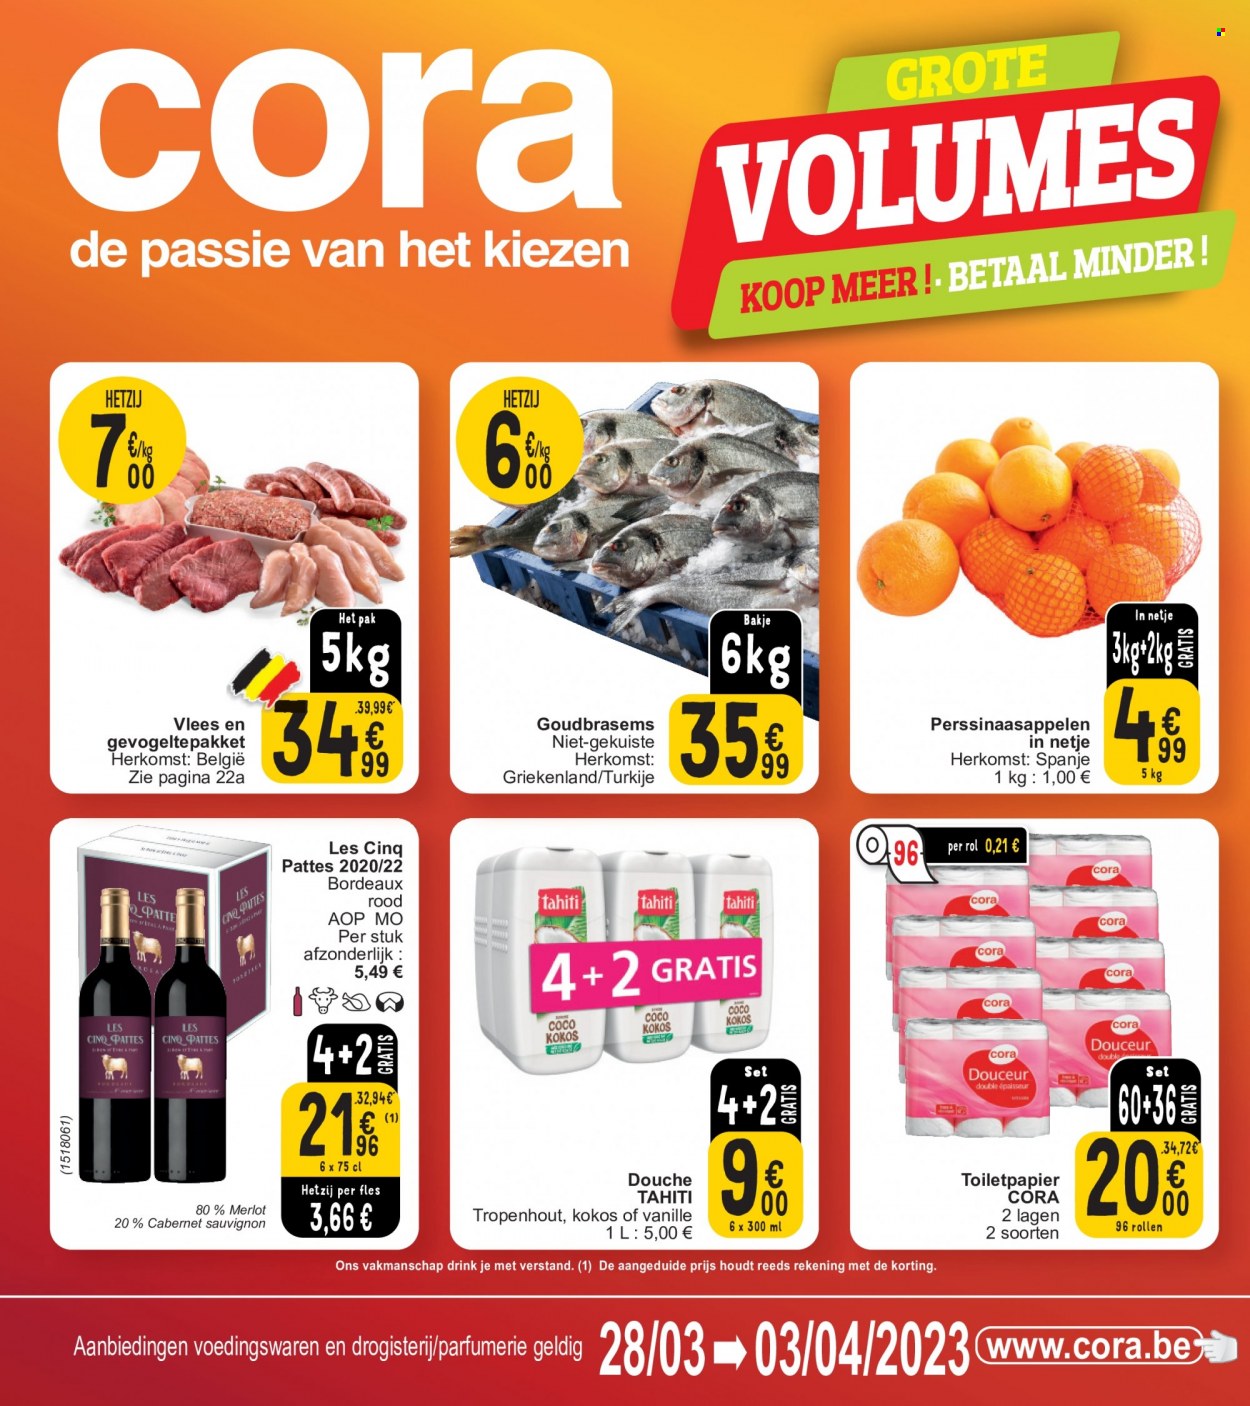 thumbnail - Catalogue Cora - 28/03/2023 - 03/04/2023 - Produits soldés - vin blanc, vin rouge, vin, Bordeaux, alcool, Cabernet Sauvignon, Tahiti. Page 1.